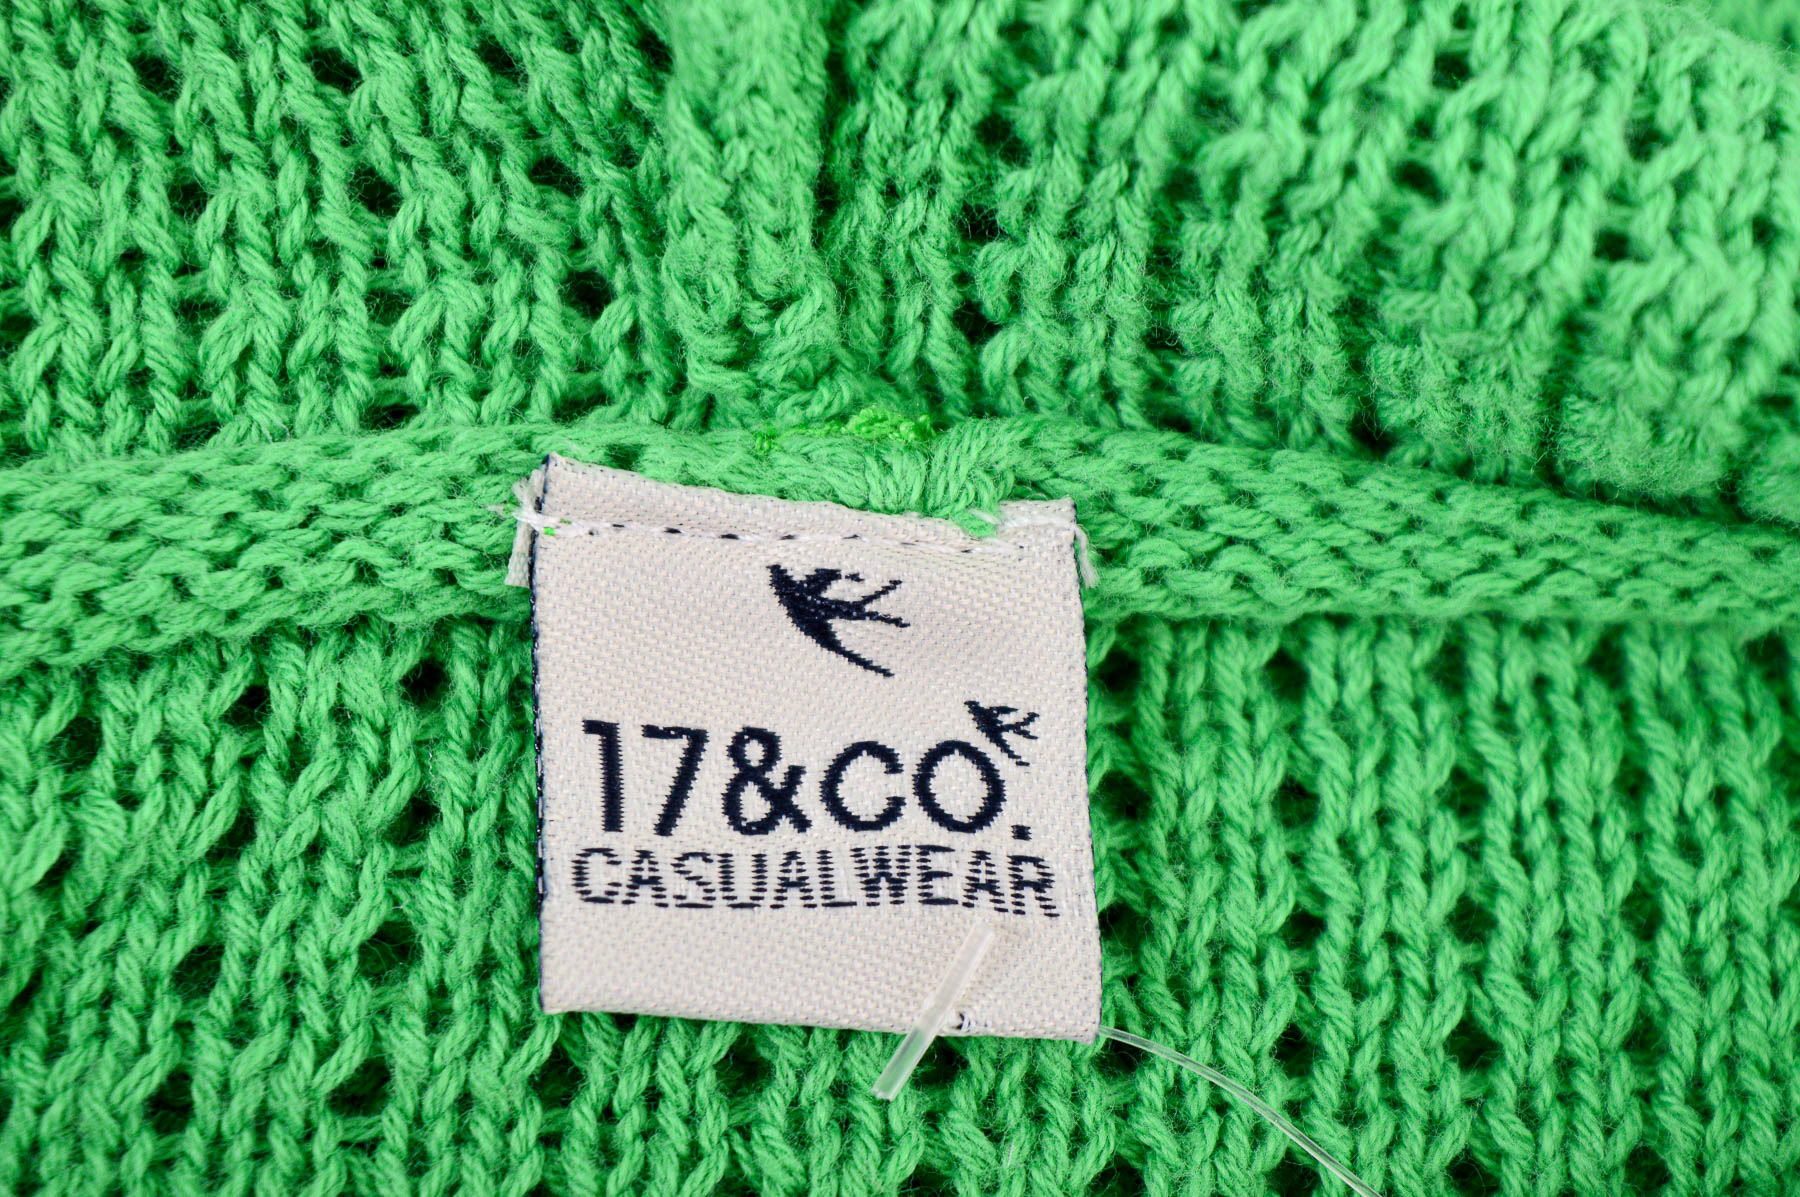 Women's sweater - 17&CO. CASUALWEAR - 2